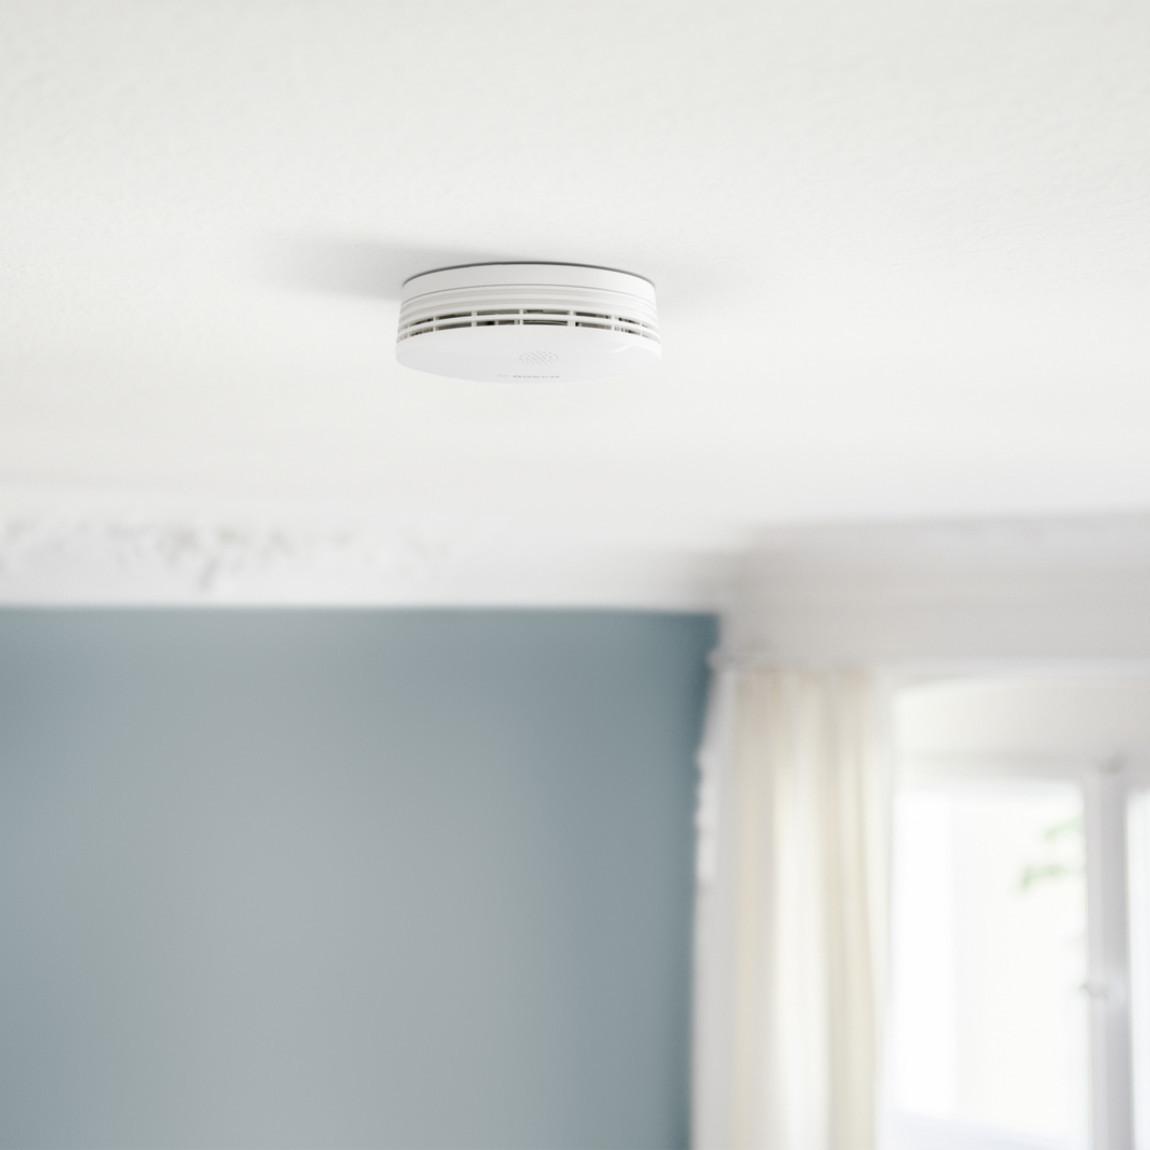 Bosch Smart Home - Starter Set Sicherheit Plus_Rauchwarnmelder an Decke